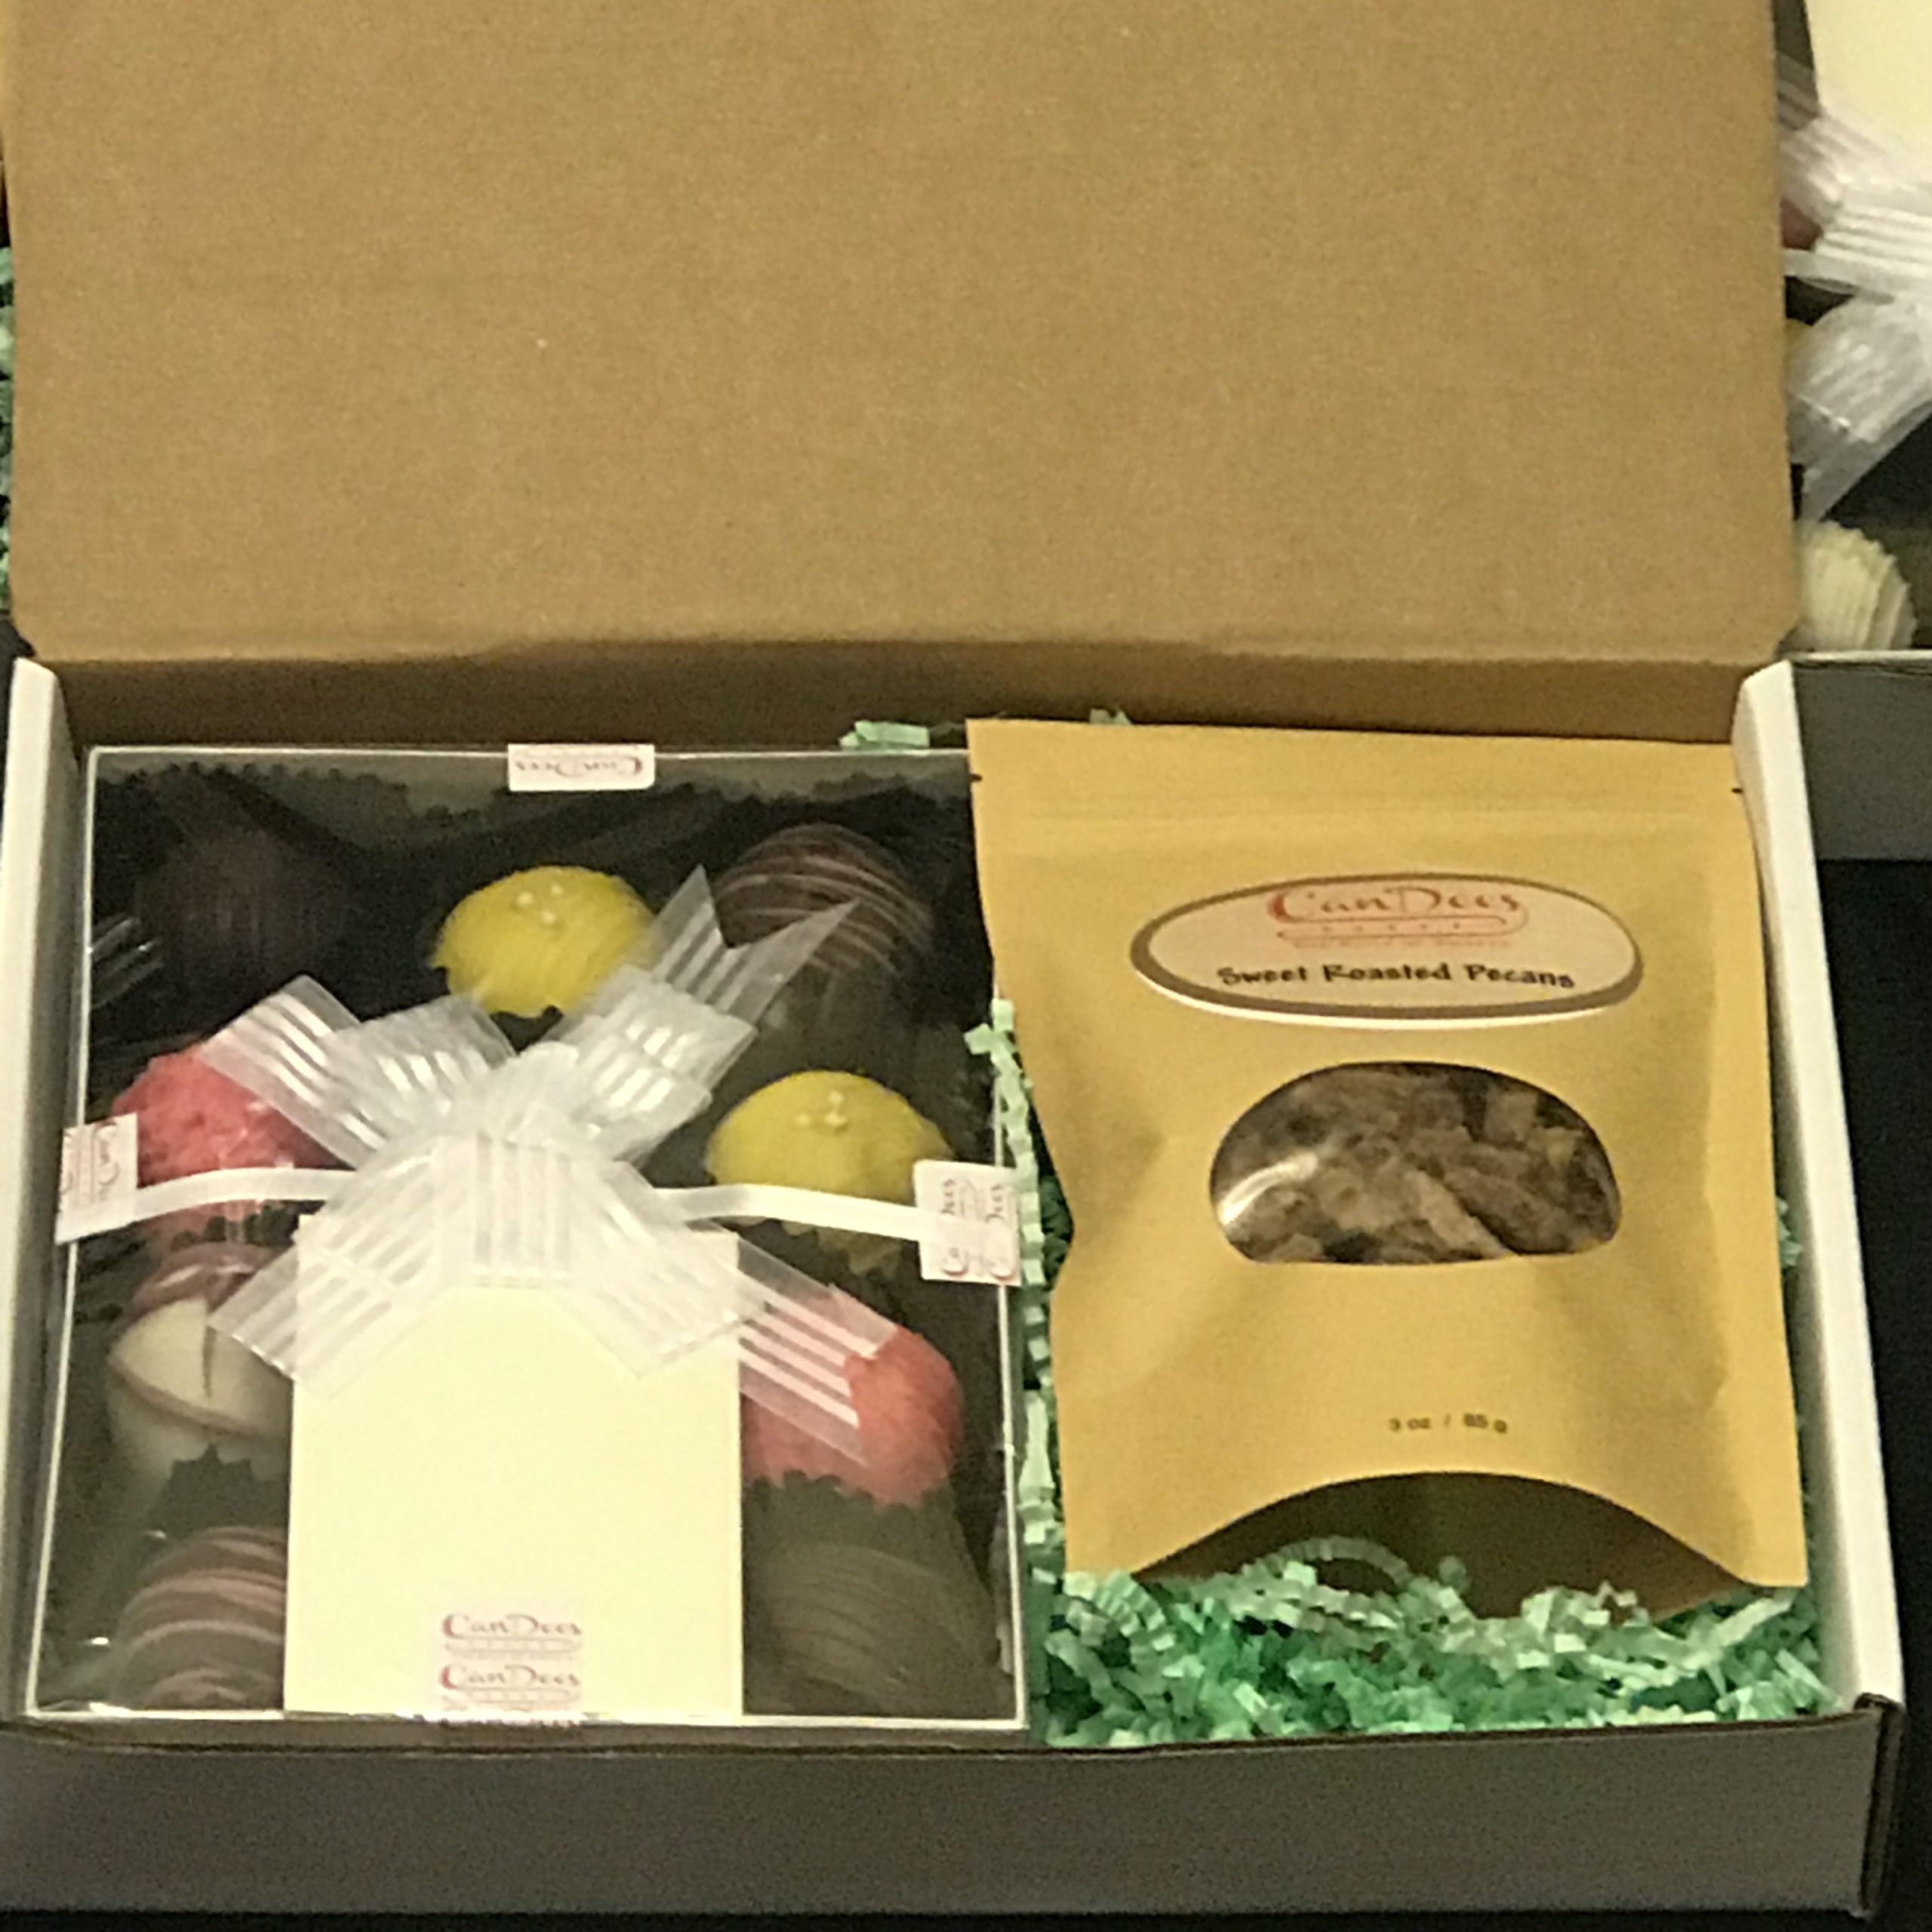 Cake Bite Treats & Sweet Roasted Pecans Gift Set